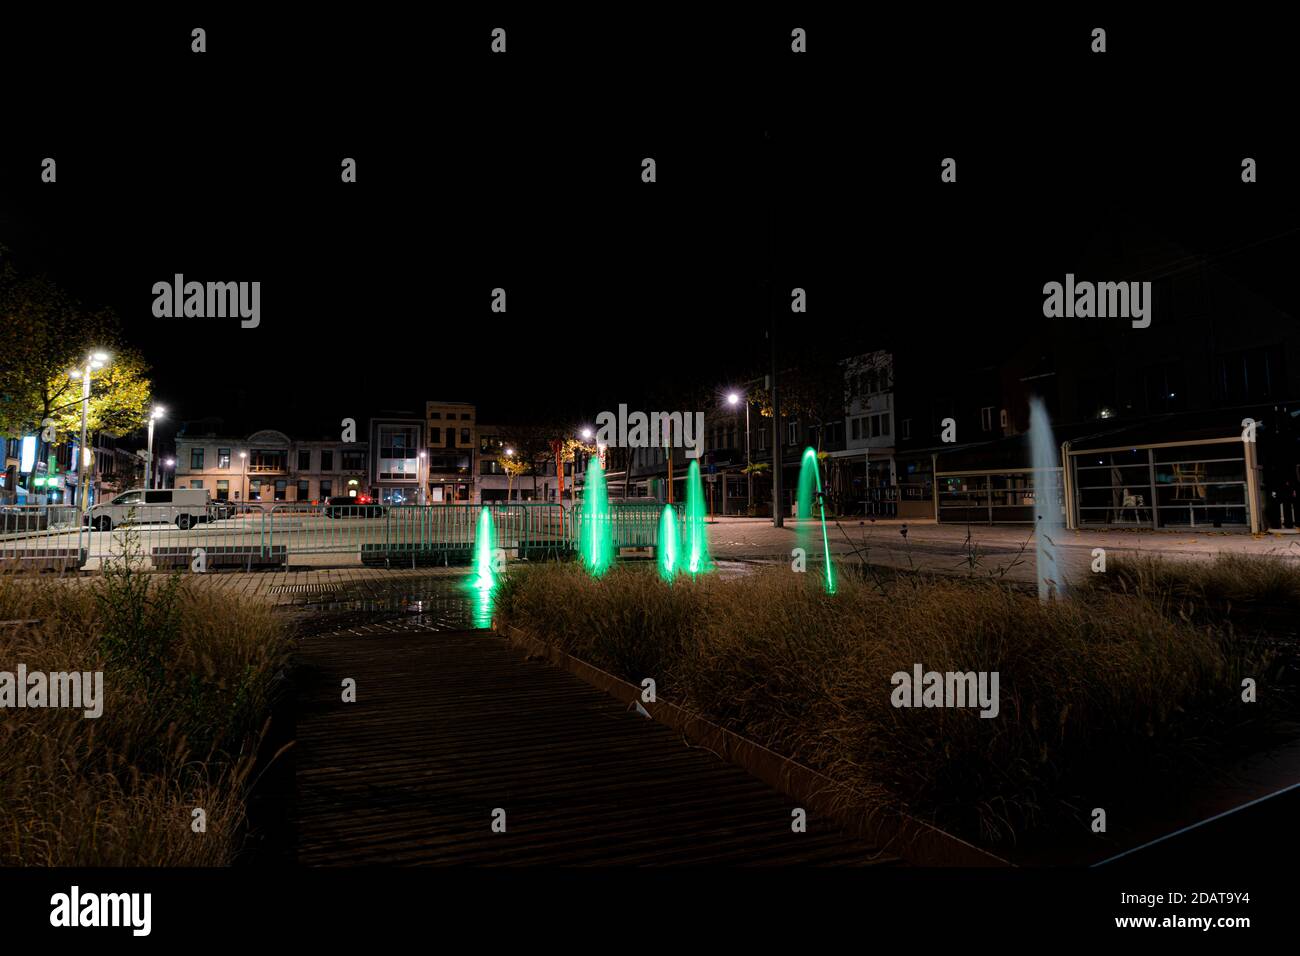 Fontaines sur le marché d'izegem la nuit. Image détaillée avec de l'eau verte dans une bonne prise de vue Banque D'Images